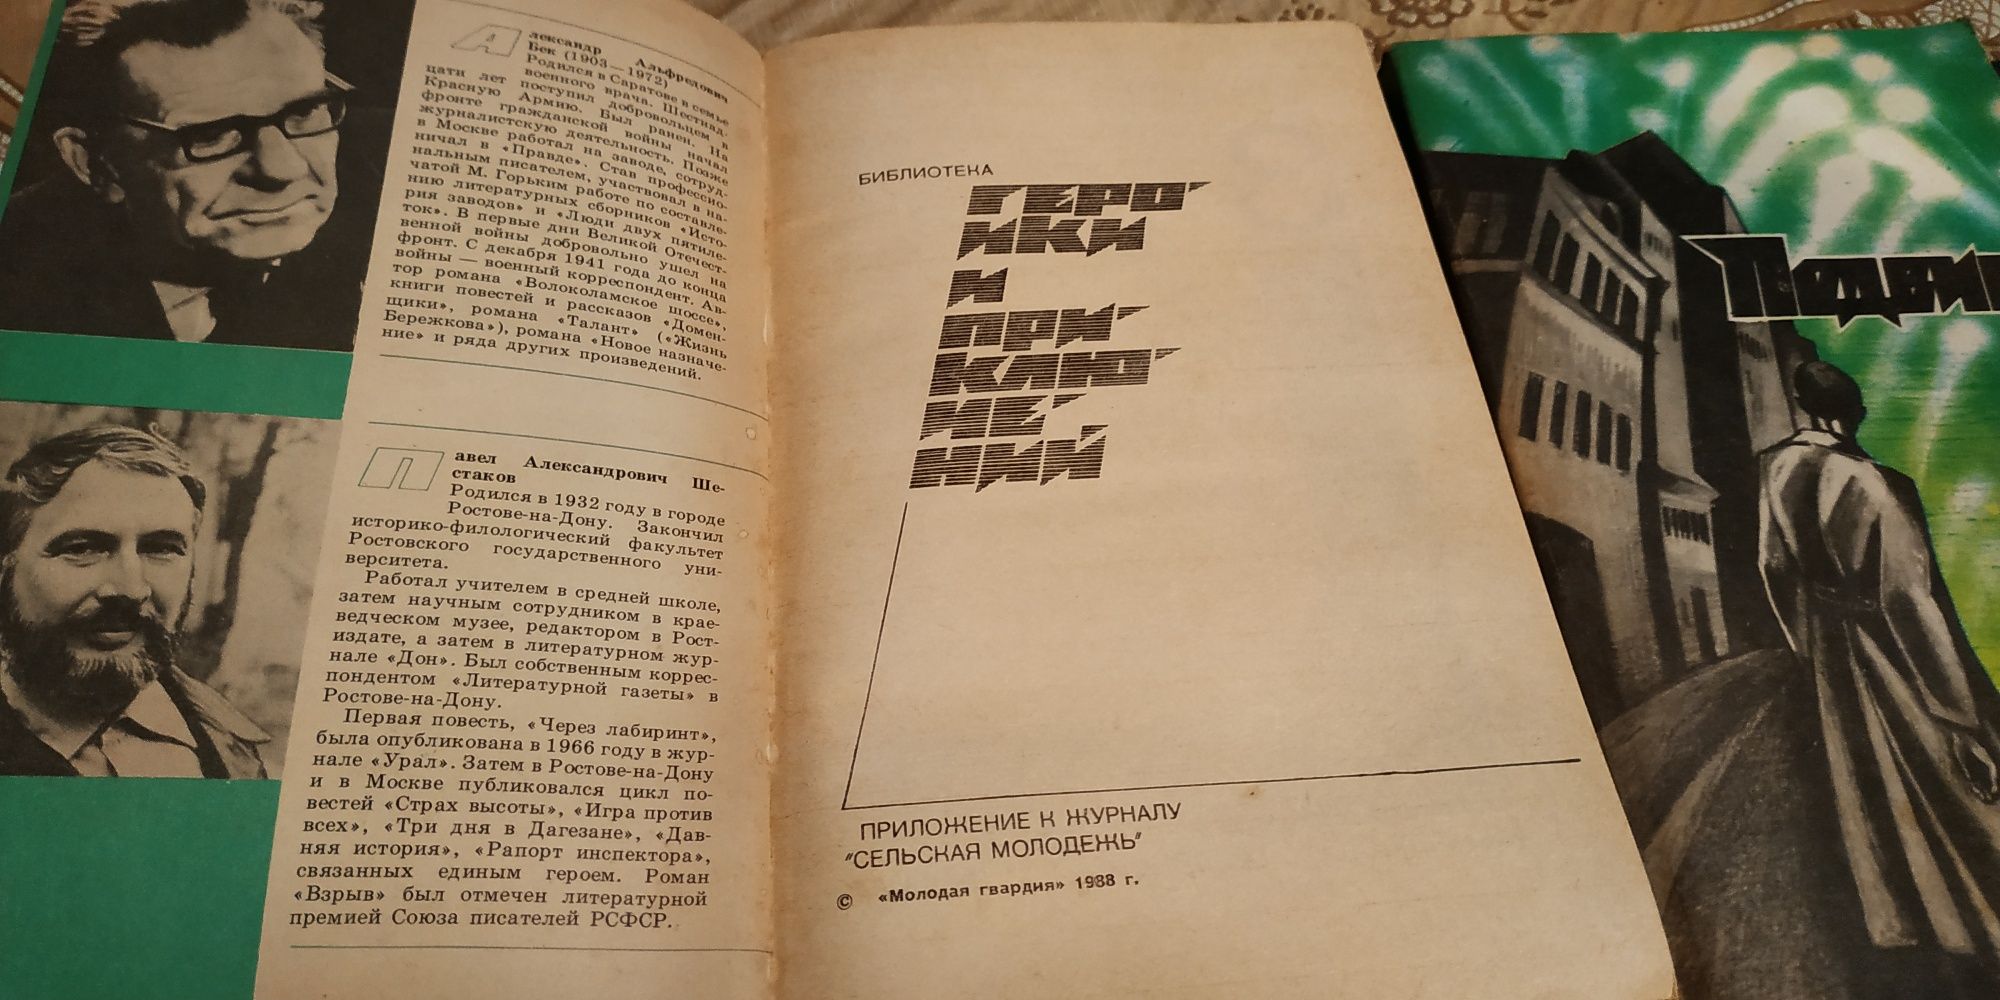 Книги Подвиг из приложения к журналу 1988 г.